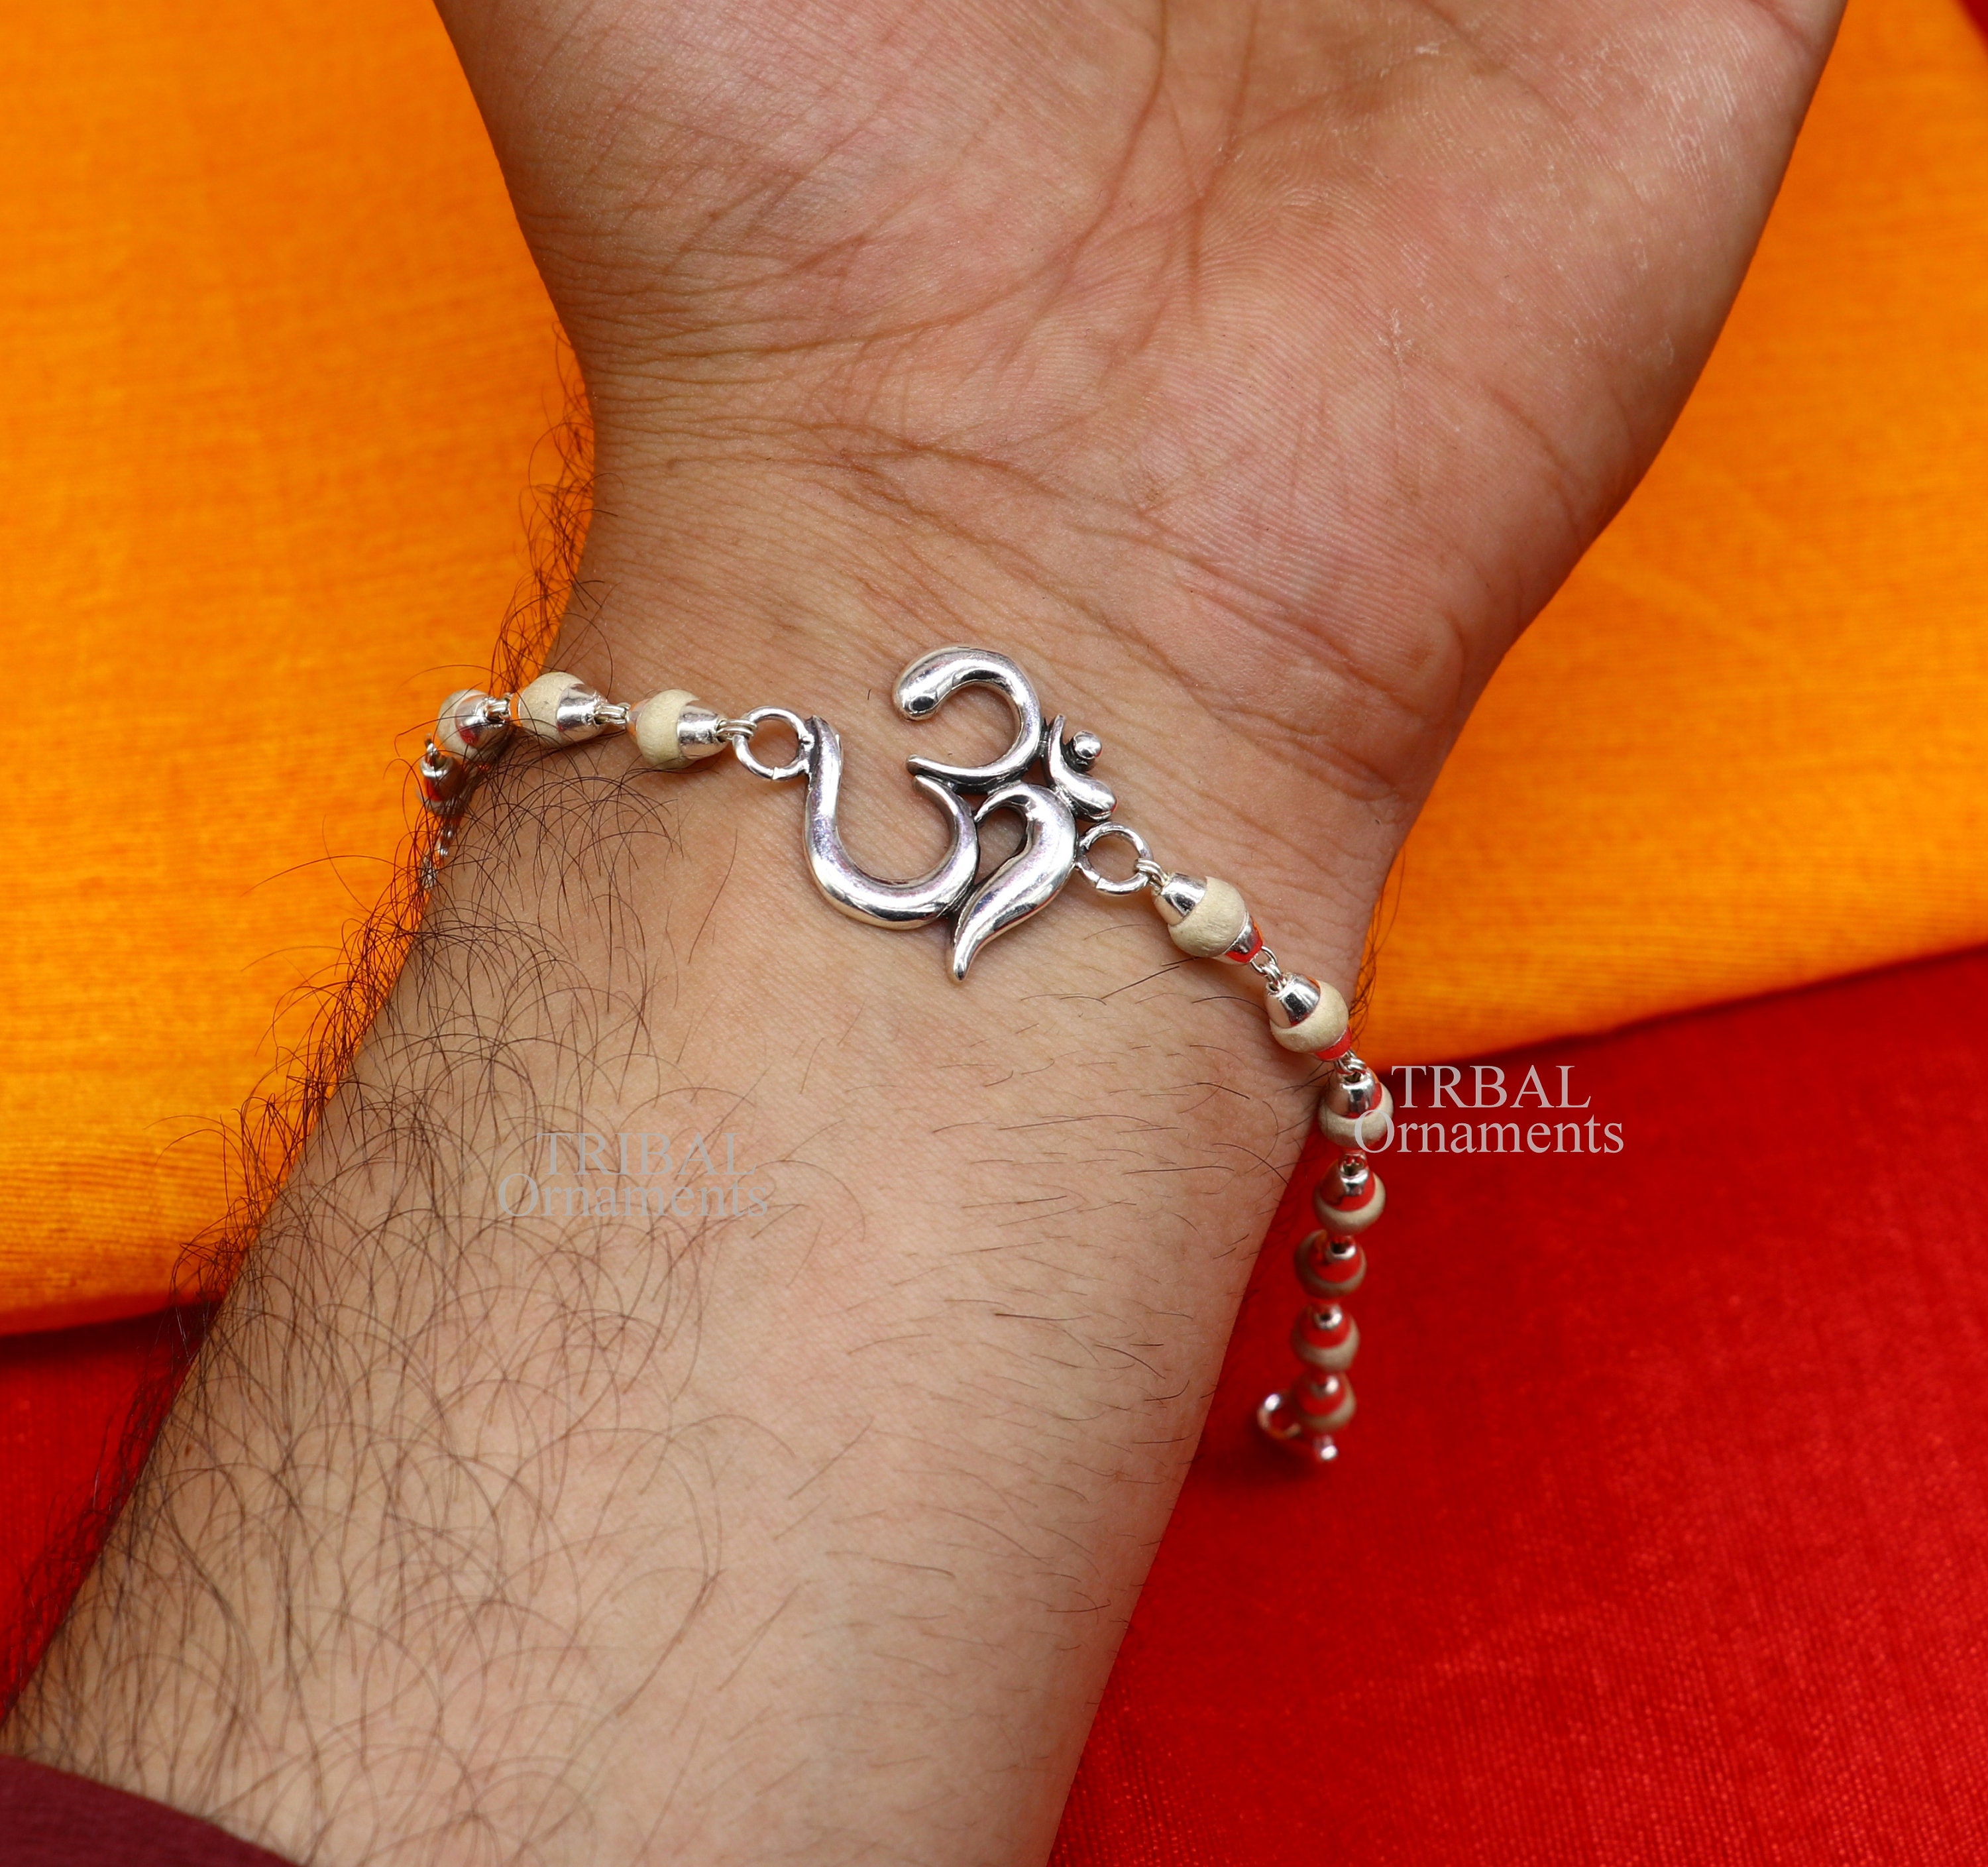 Buy OM Bracelet, Men's Bracelet With Tibetan Silver Om Charm, Hindu Symbol,  Gray Cord, Bracelet for Men, Gift for Him, Yoga Bracelet, Buddhist Online  in India - Etsy